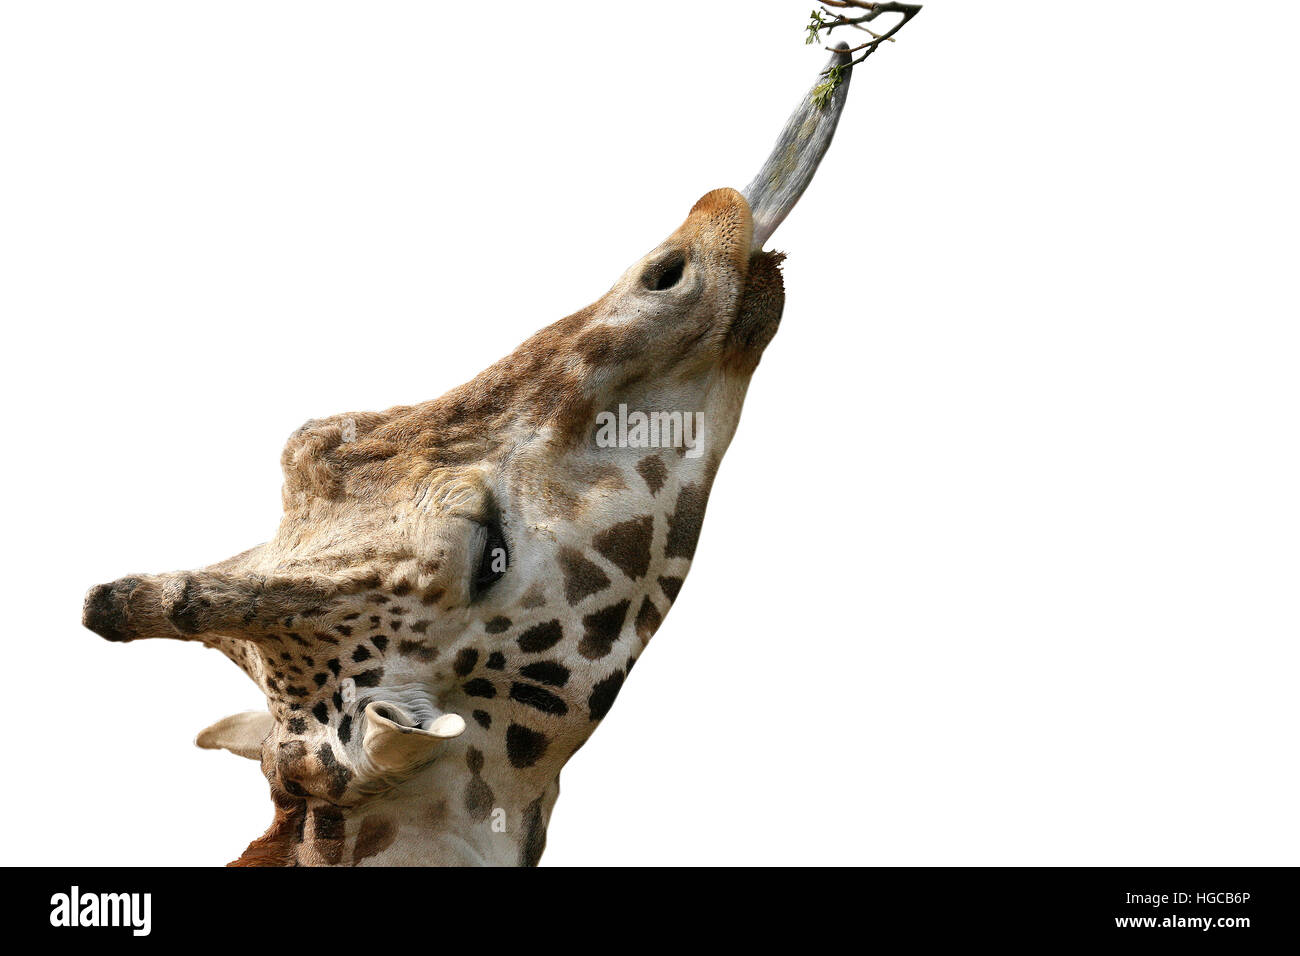 Giraffe (Giraffa camelopardalis) eating Stock Photo